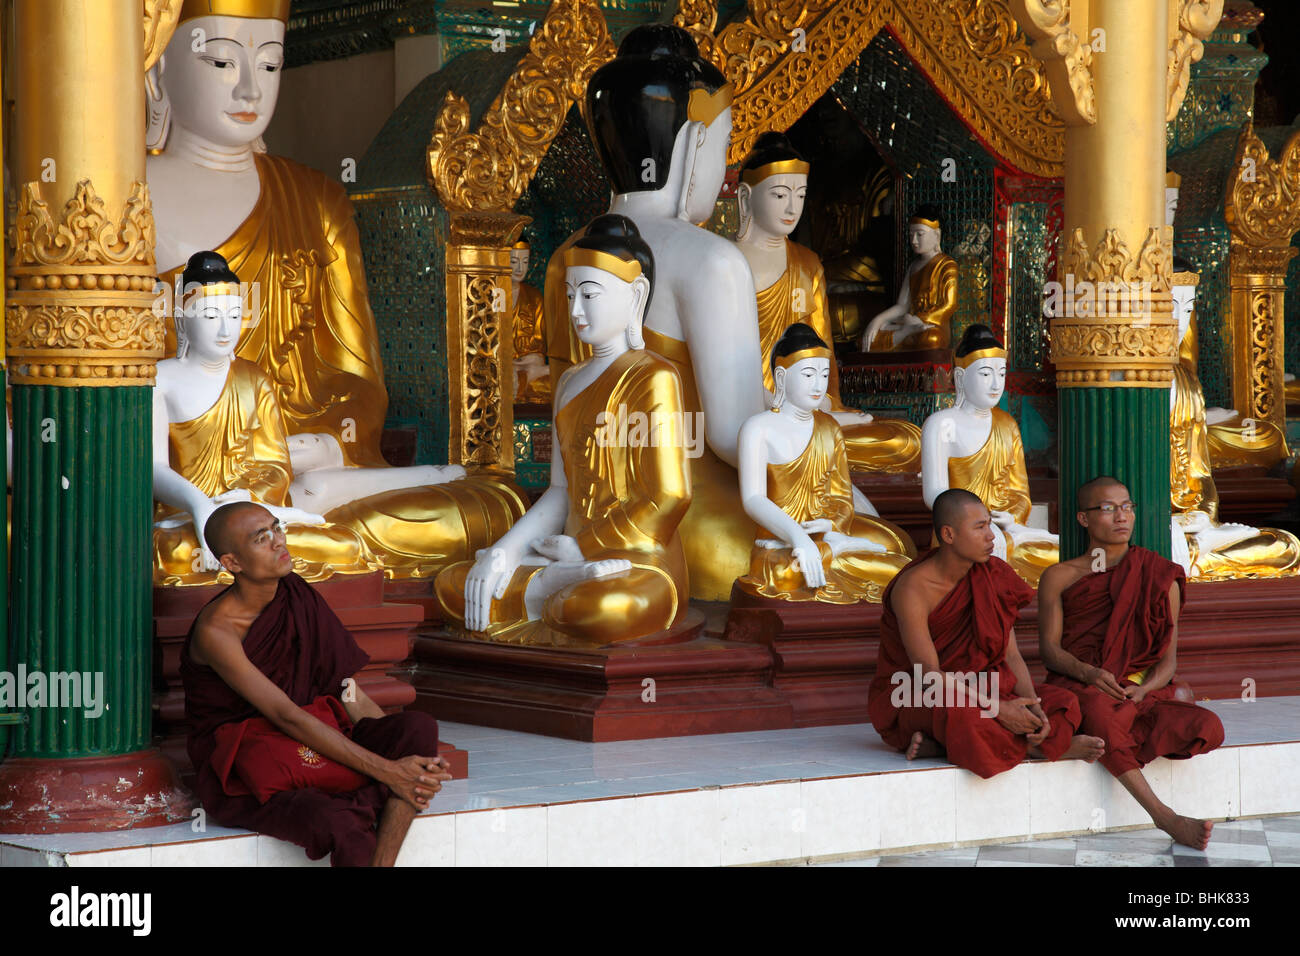 Birmania Myanmar Yangon Rangoon Shwedagon Pagoda hito histórico monumento budista religiosa Foto de stock